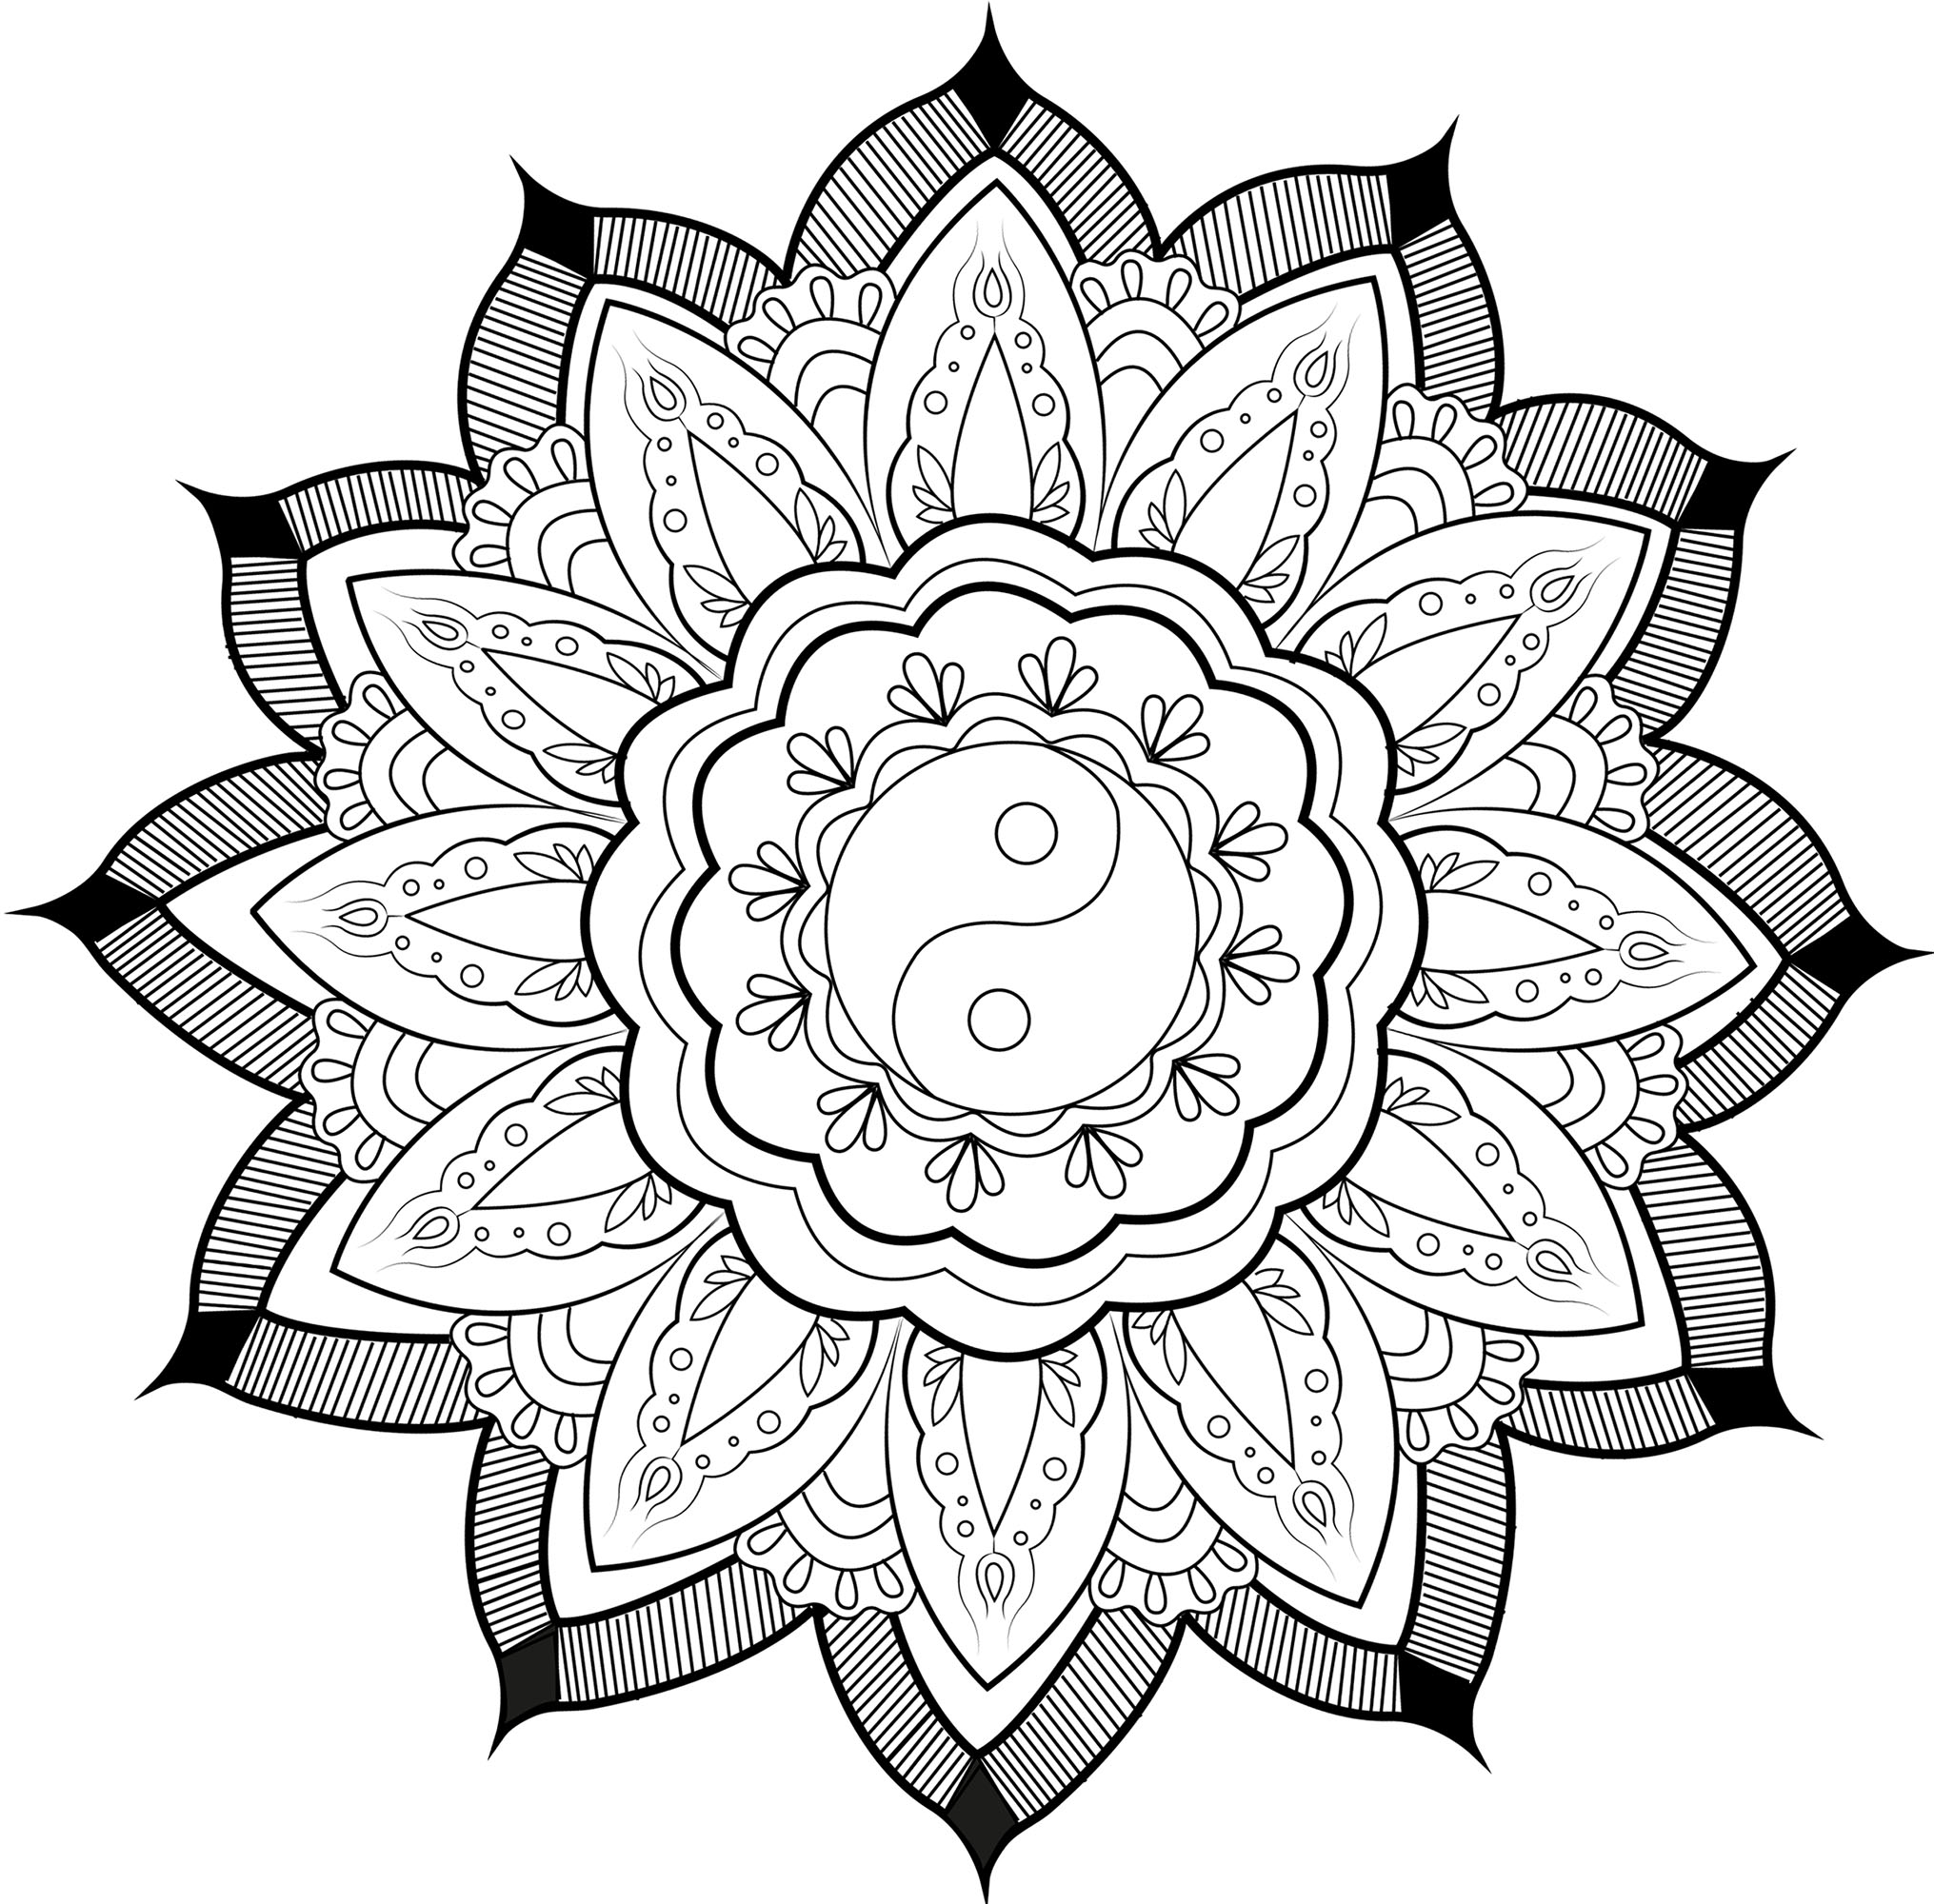 Hübsches Mandala mit einem Yin & Yang-Symbol in der Mitte und hübschen Blättern, die es umgeben.